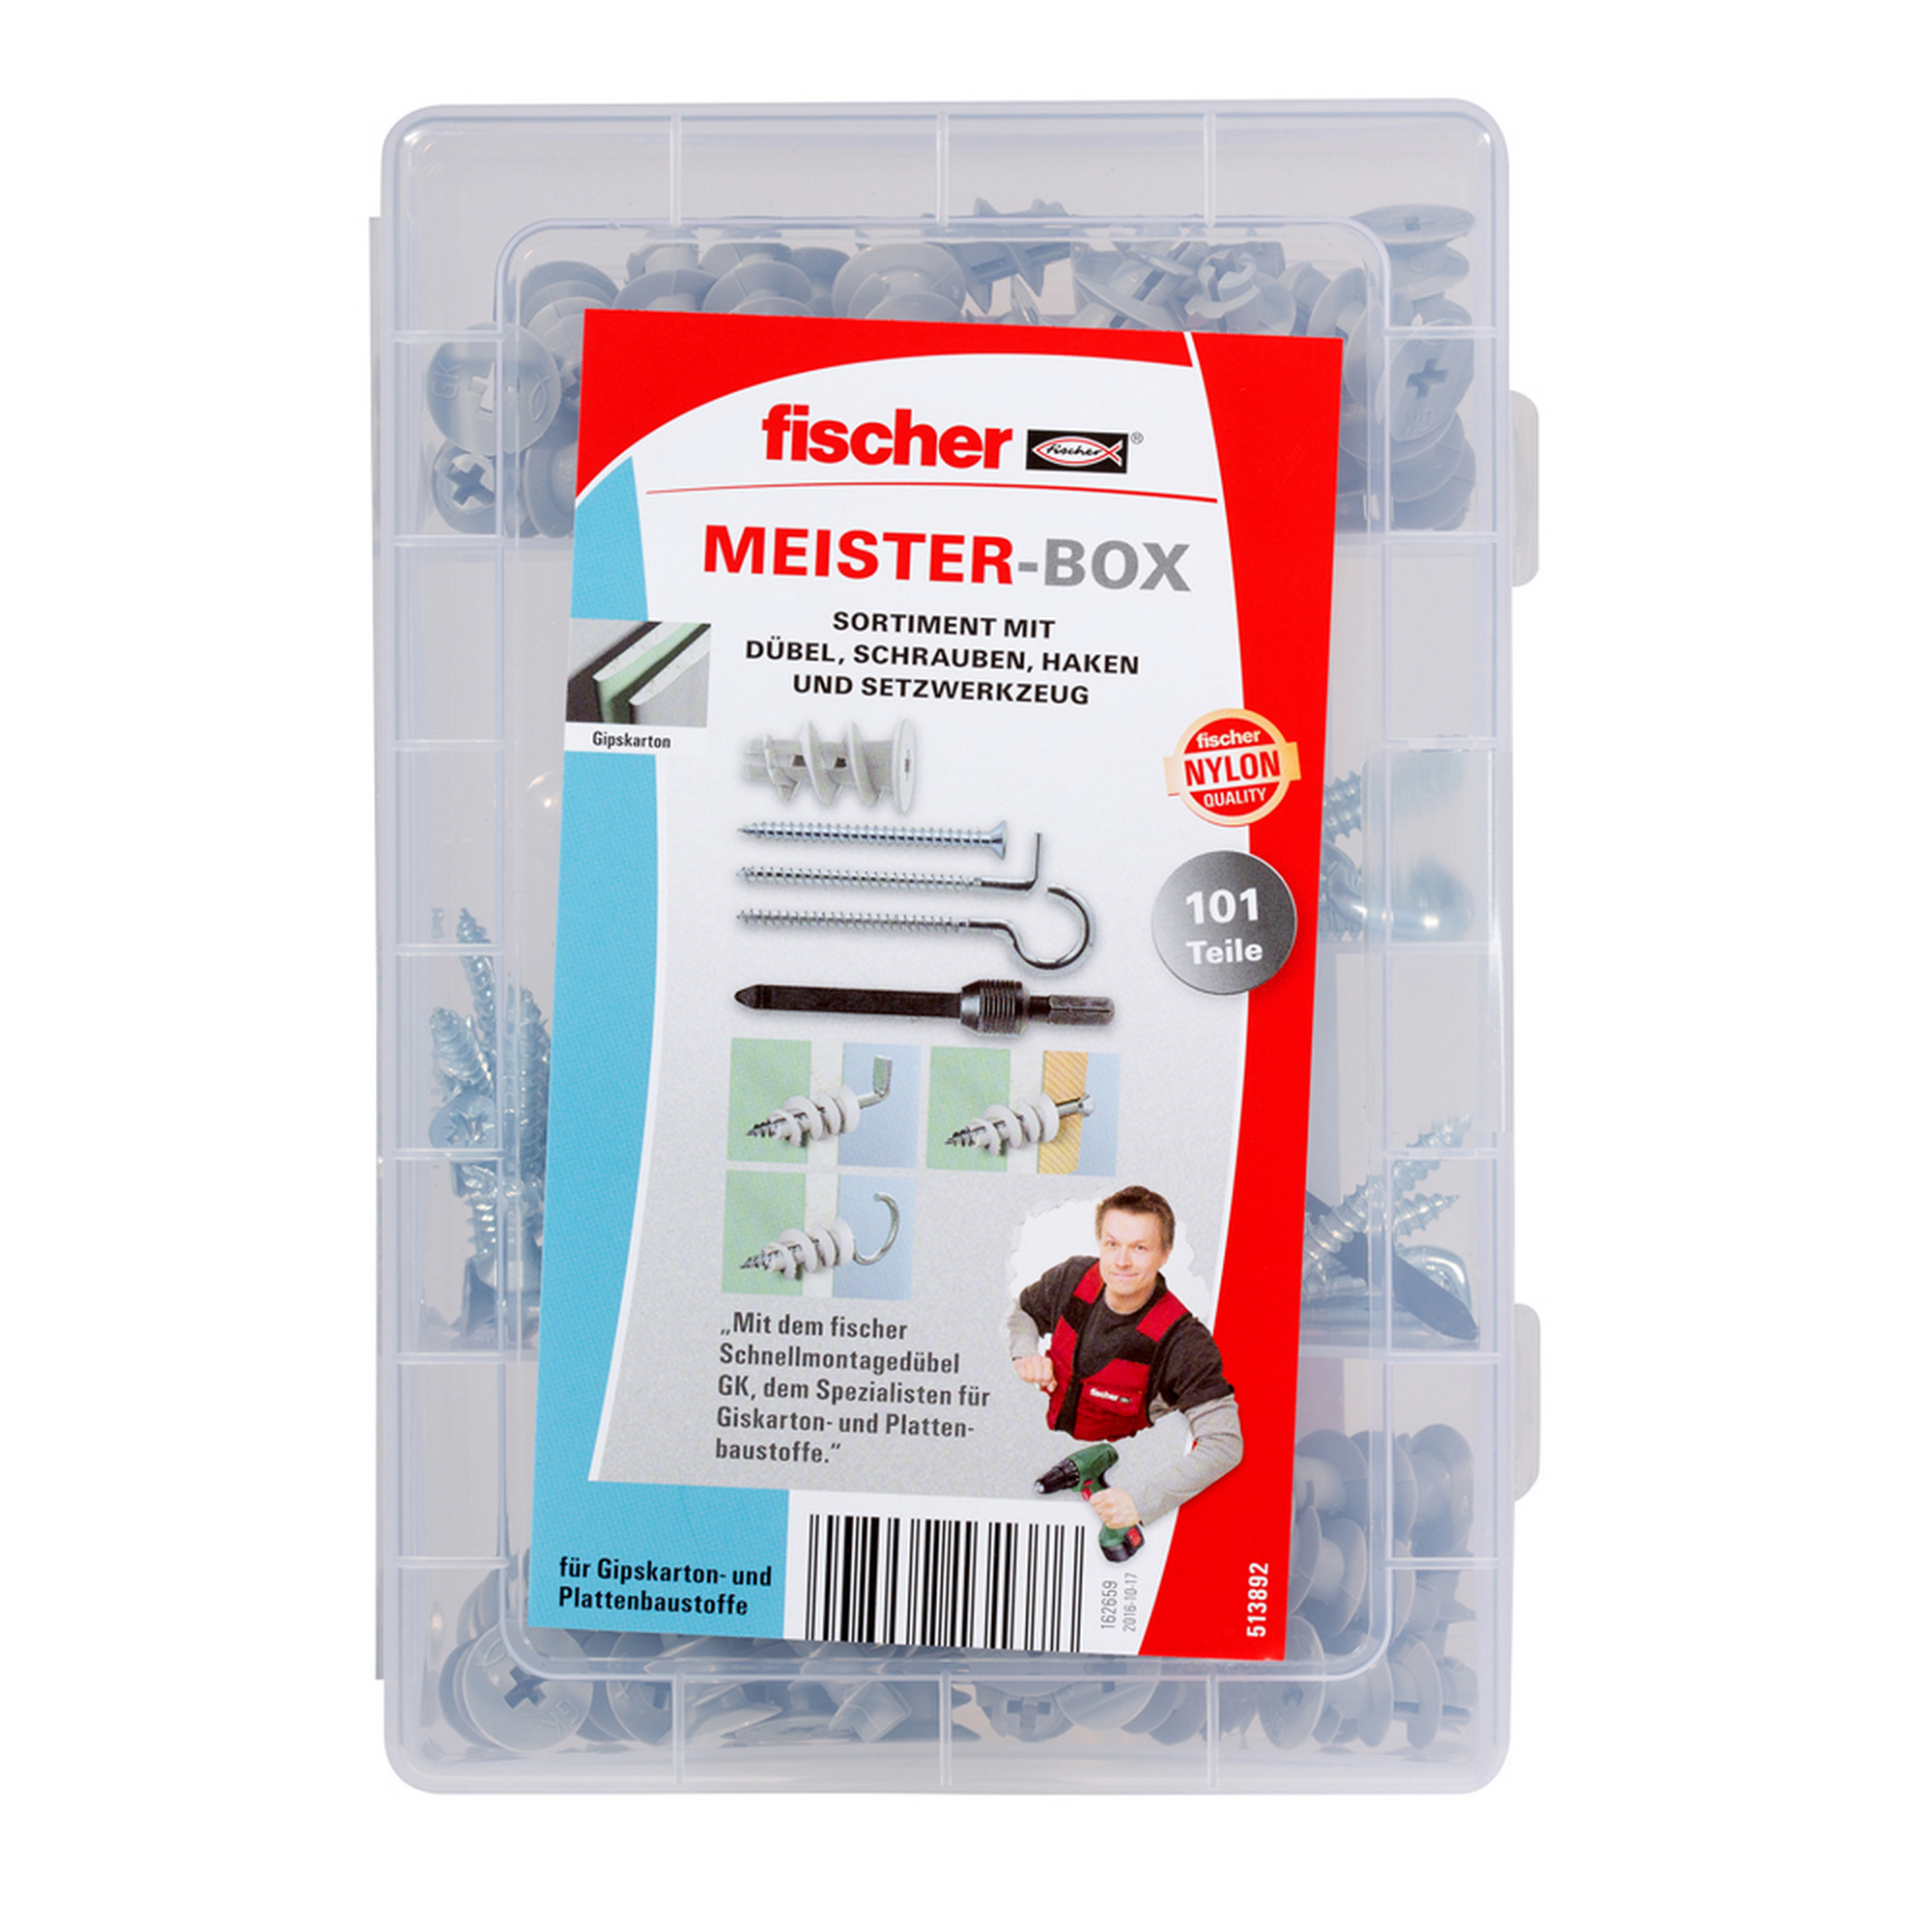 fischer Meister-Box Mit GK + Schrauben + Haken 101-teilig + product picture